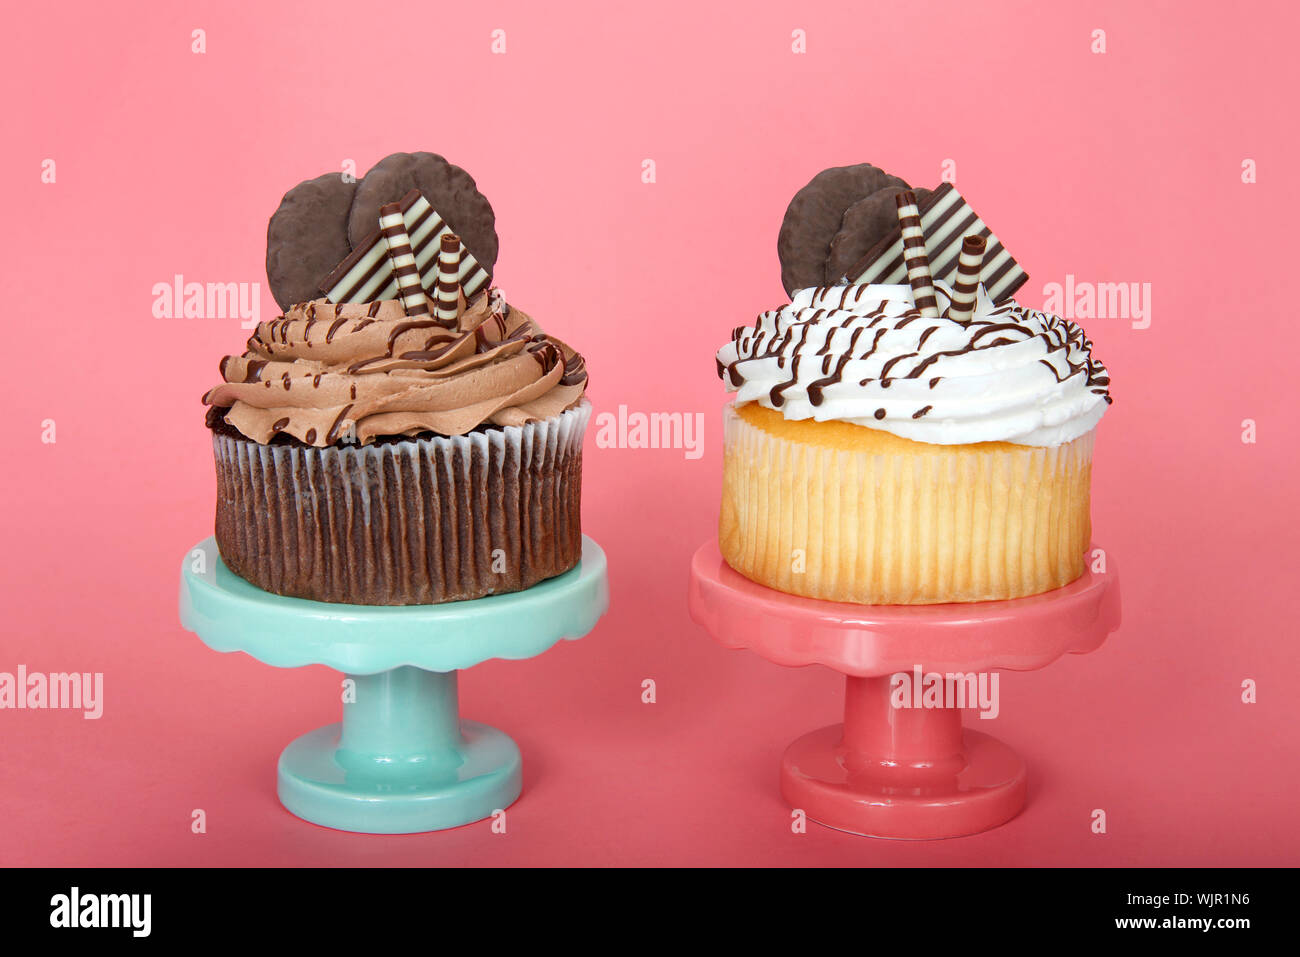 Vanille chocolat géant un cup cakes avec glaçage vanille agrémenté de gaufrettes au chocolat blanc et noir et les cookies sur un piédestal rose et vert Banque D'Images